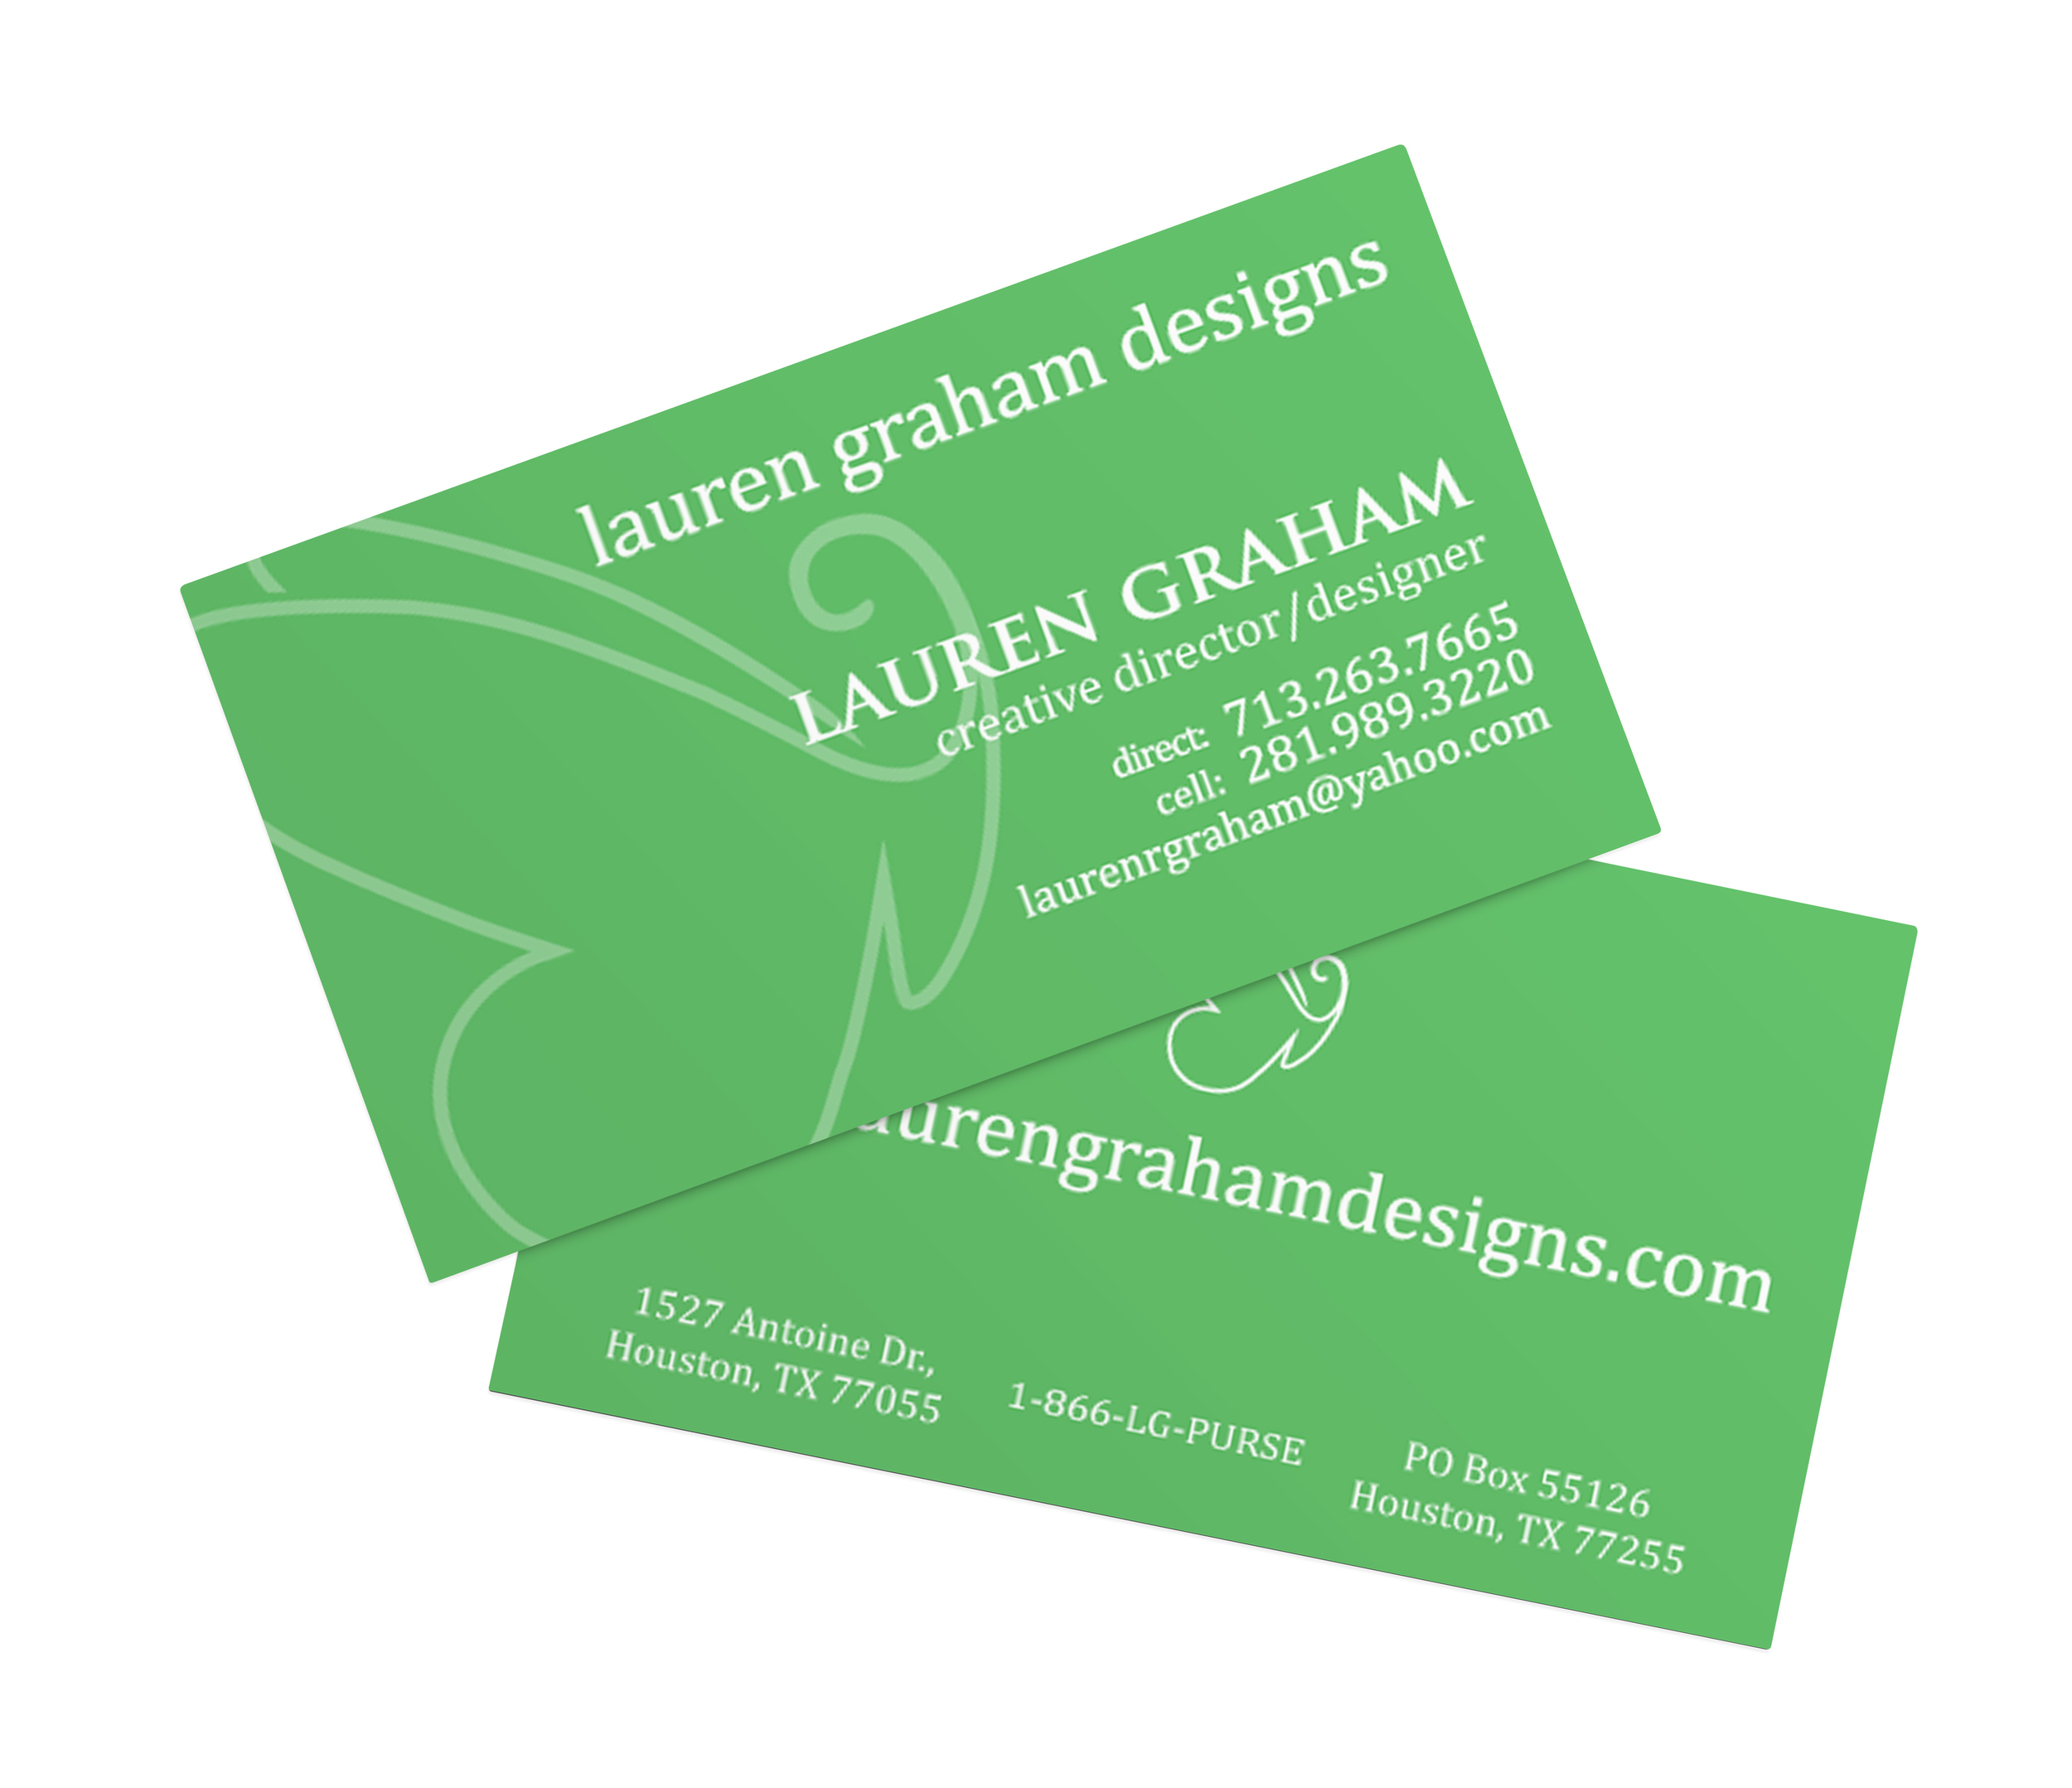 Lauren Graham Designs Branding